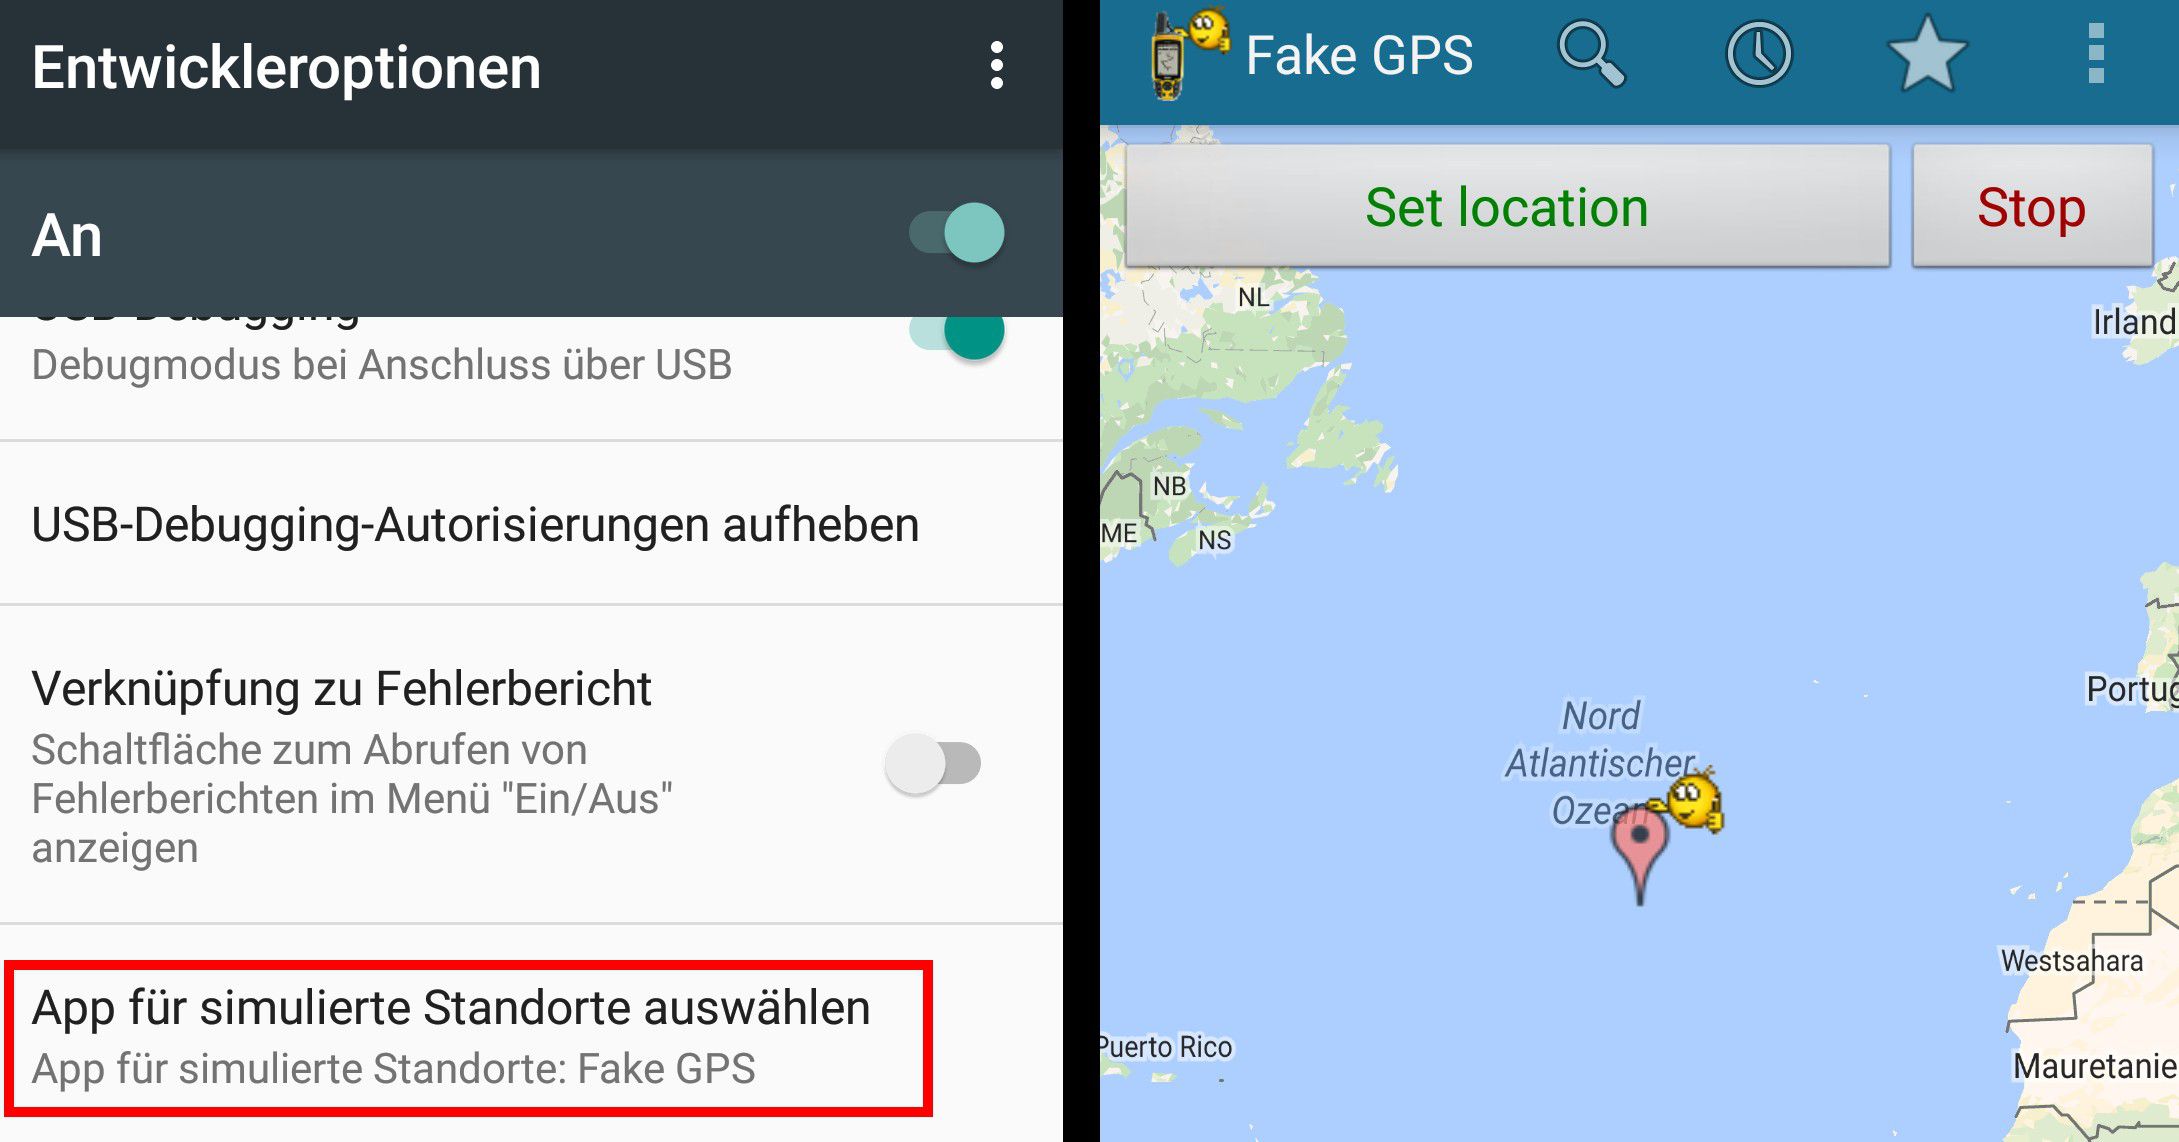 GPS Location ändern per Jailbreak oder Root